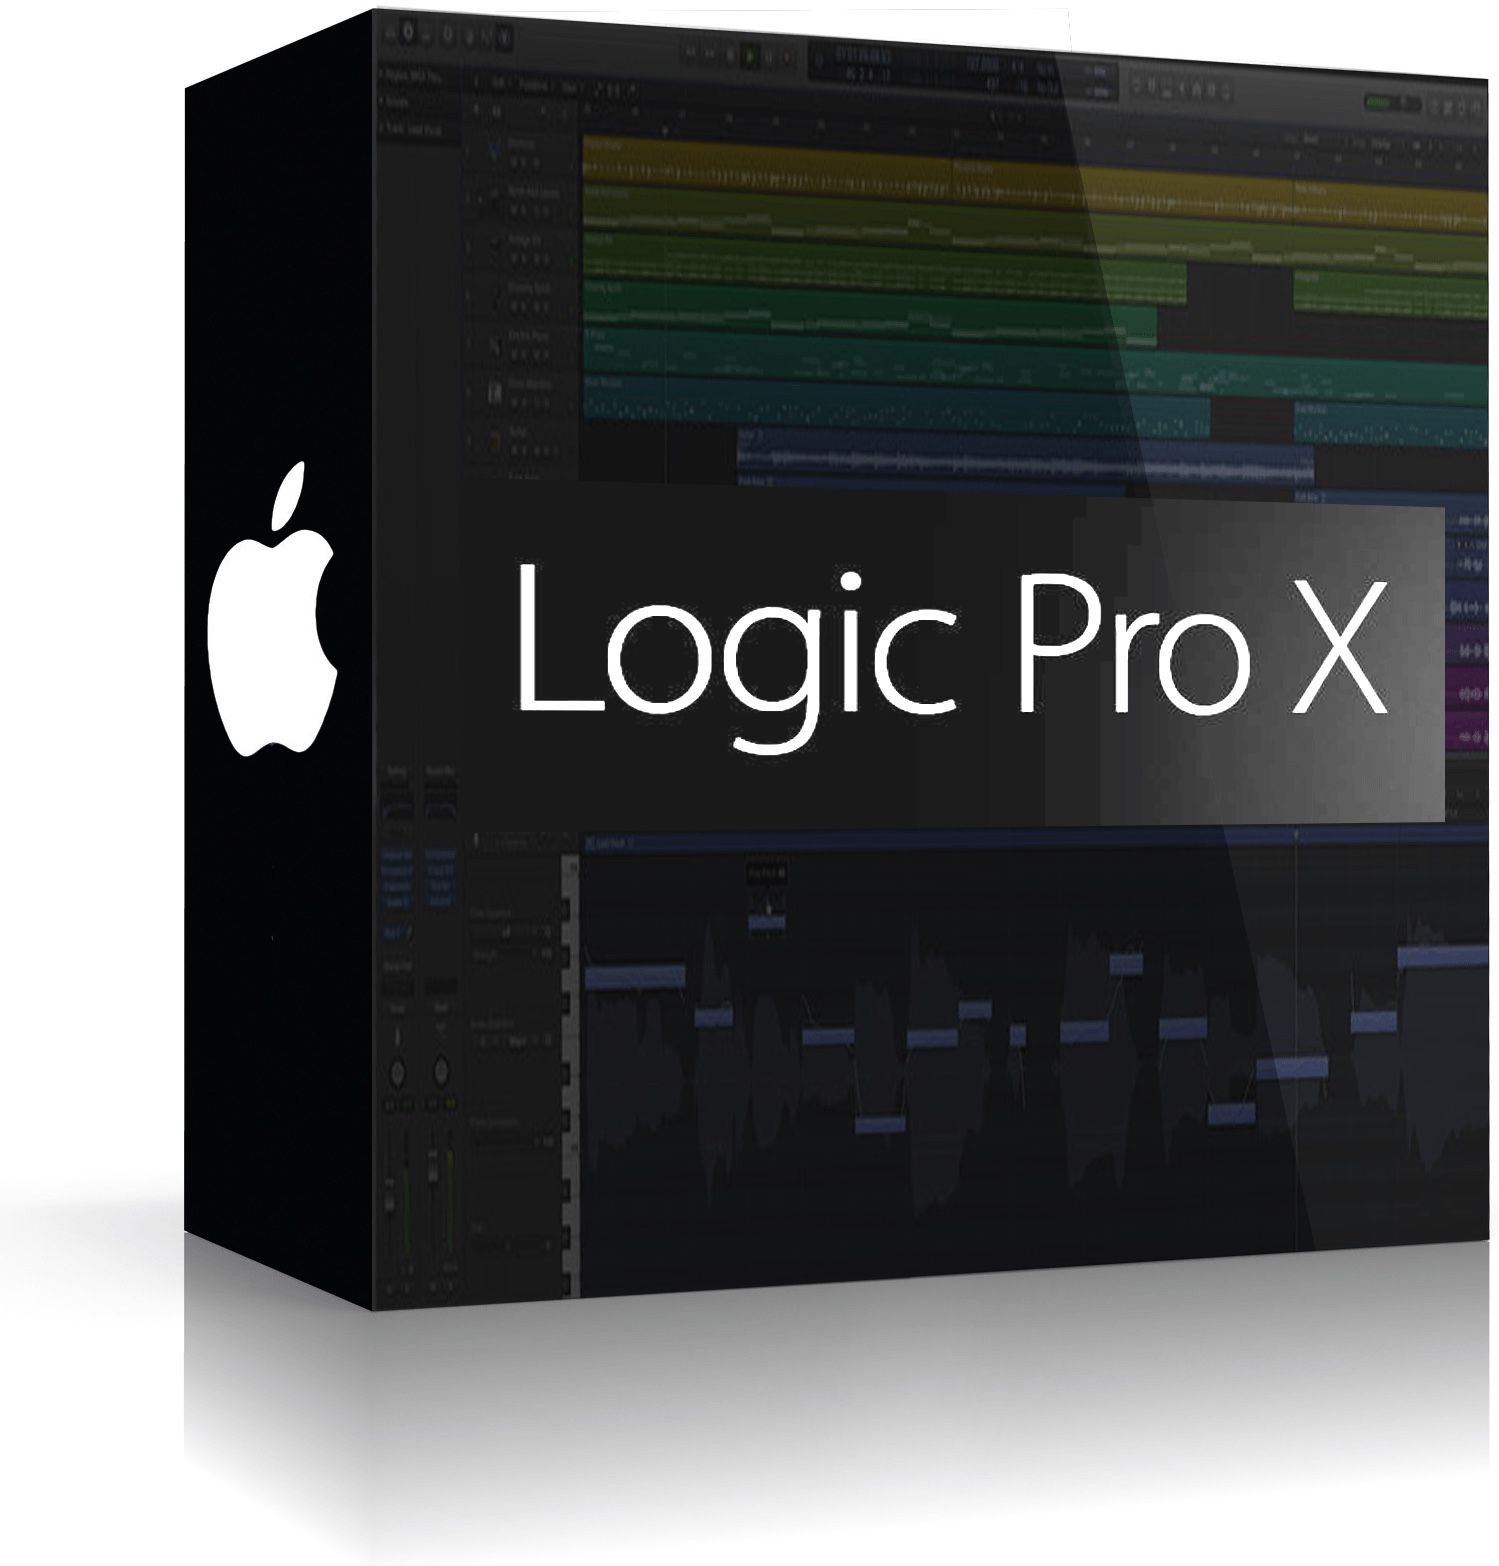 Logic Pro x newly updated to 10.4.7